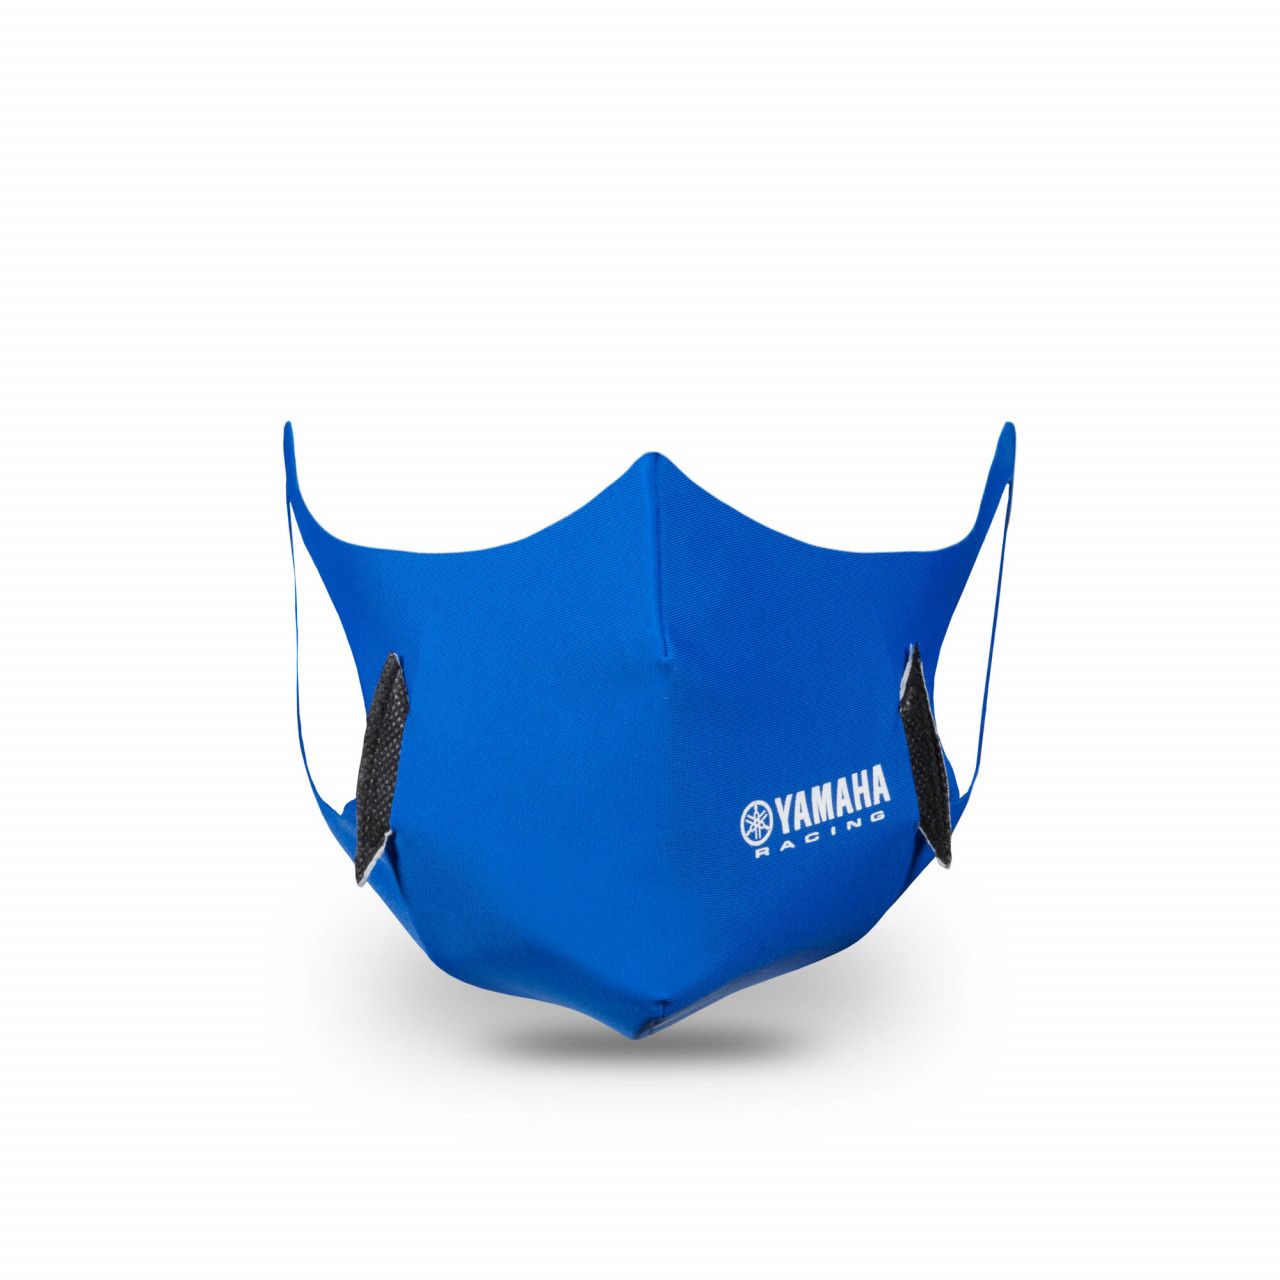 YAMAHA Masque de protection Racing Bleu